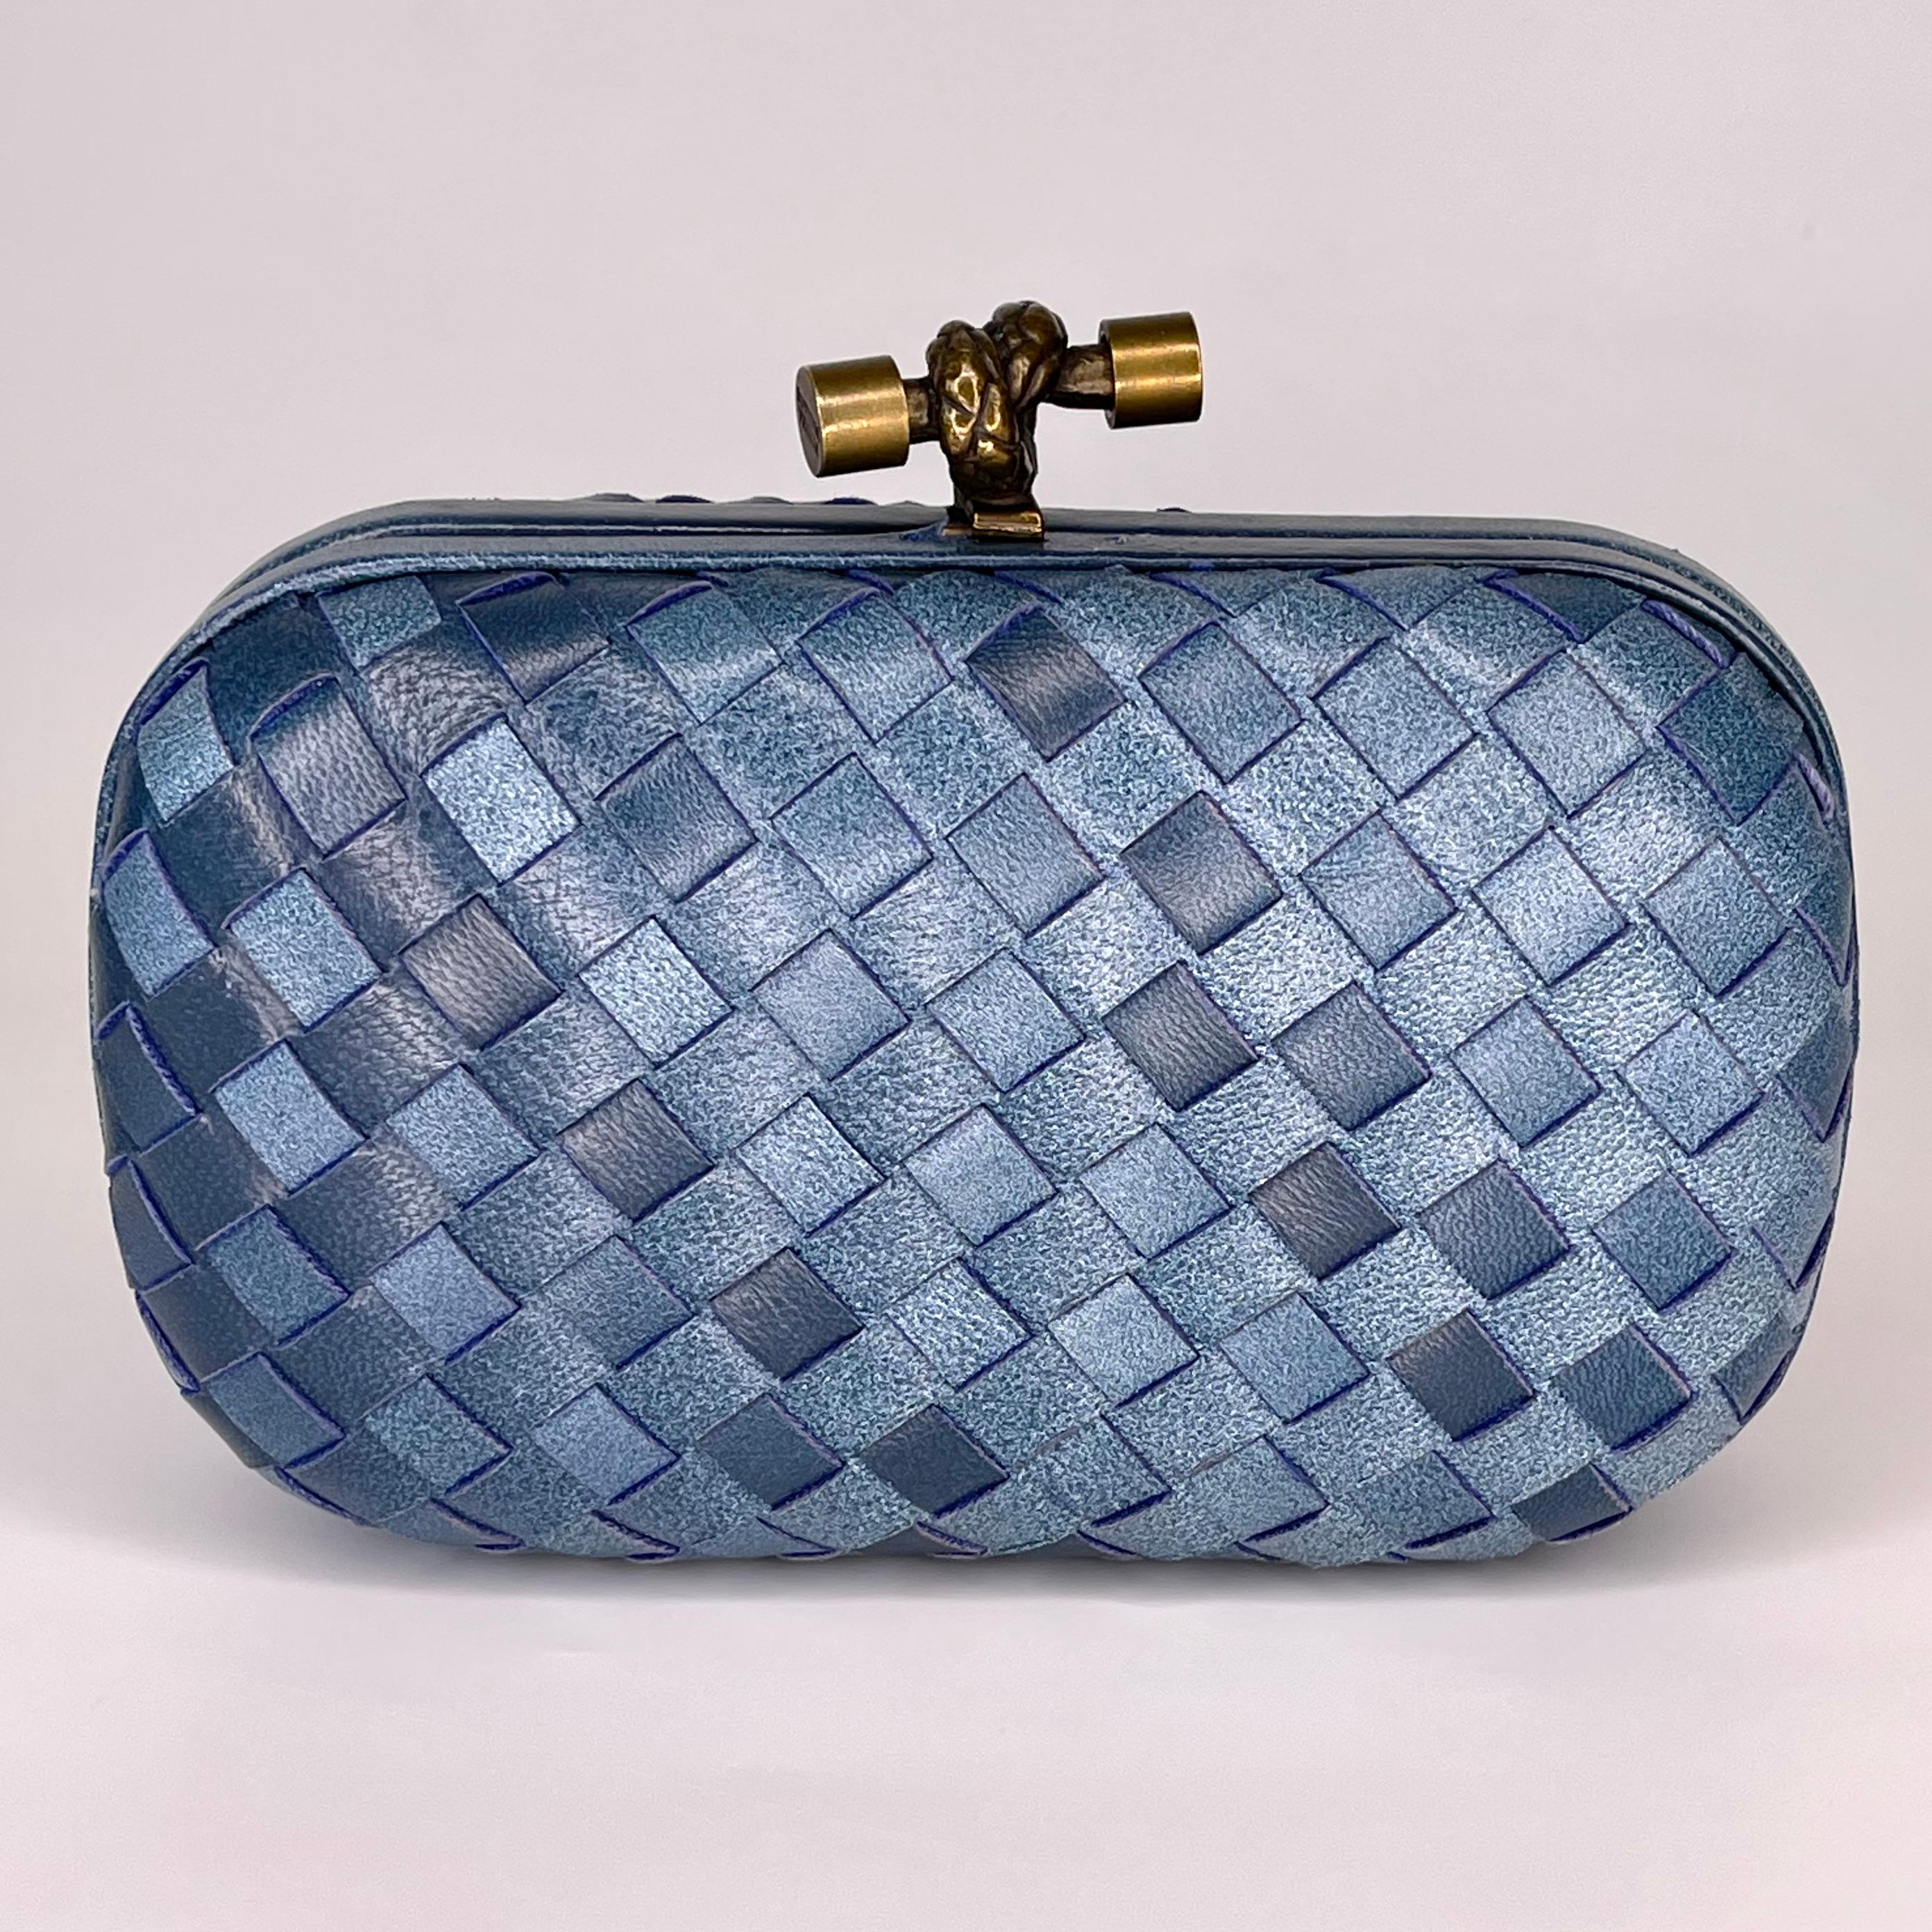 Diese Tasche ist aus blauem Intrecciato-Leder gefertigt und verfügt über einen goldfarbenen Knoten an der Oberseite mit Druck-/Riegelverschluss. Innenfutter aus braunem Satin. Perfekt:: um Ihre Karten und Schlüssel beim Abendessen aufzubewahren.